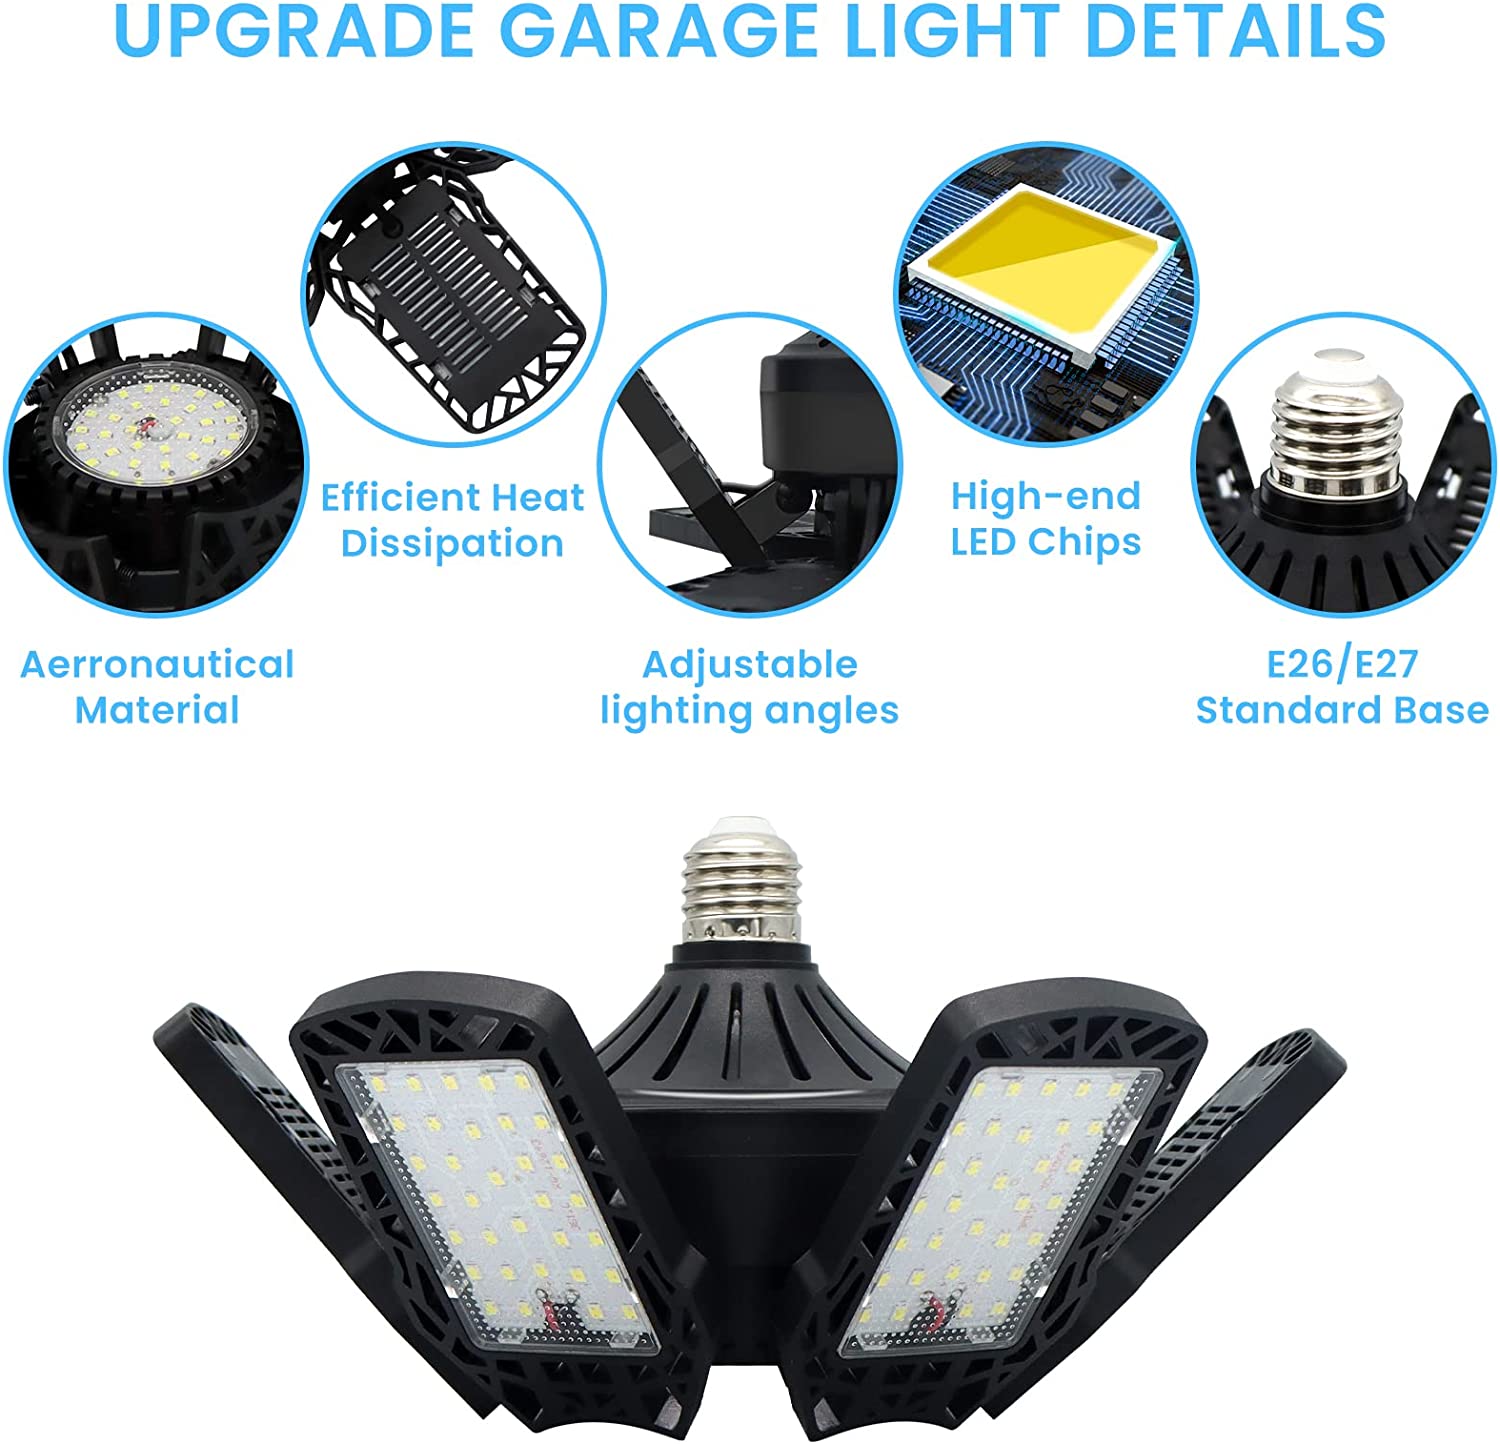 LED Garage Light 2 Pack E-POWIND 185W 18500LM 6500K Garage Light with 6+1  Panel Deformable Garage Lights Ceiling Led, LED Light for Garage Workshop  Bay Attic Basement - T-04